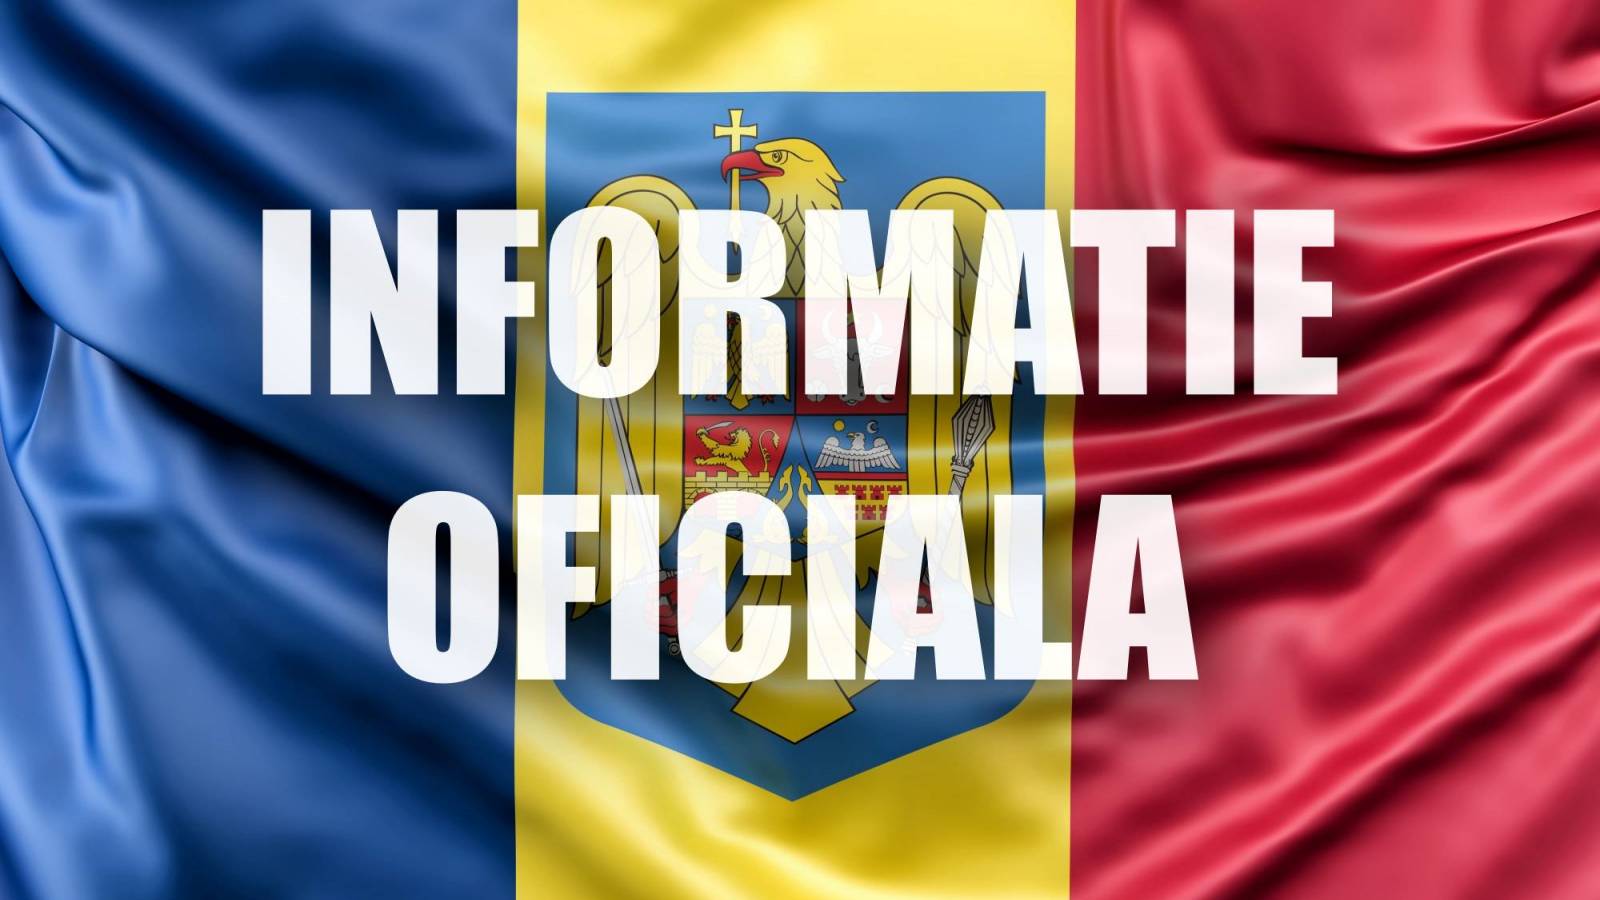 Forsvarsministeriet Ekstraordinær foranstaltning Officiel information SIDSTE ØJEBLIK Rumænien fuld af krig